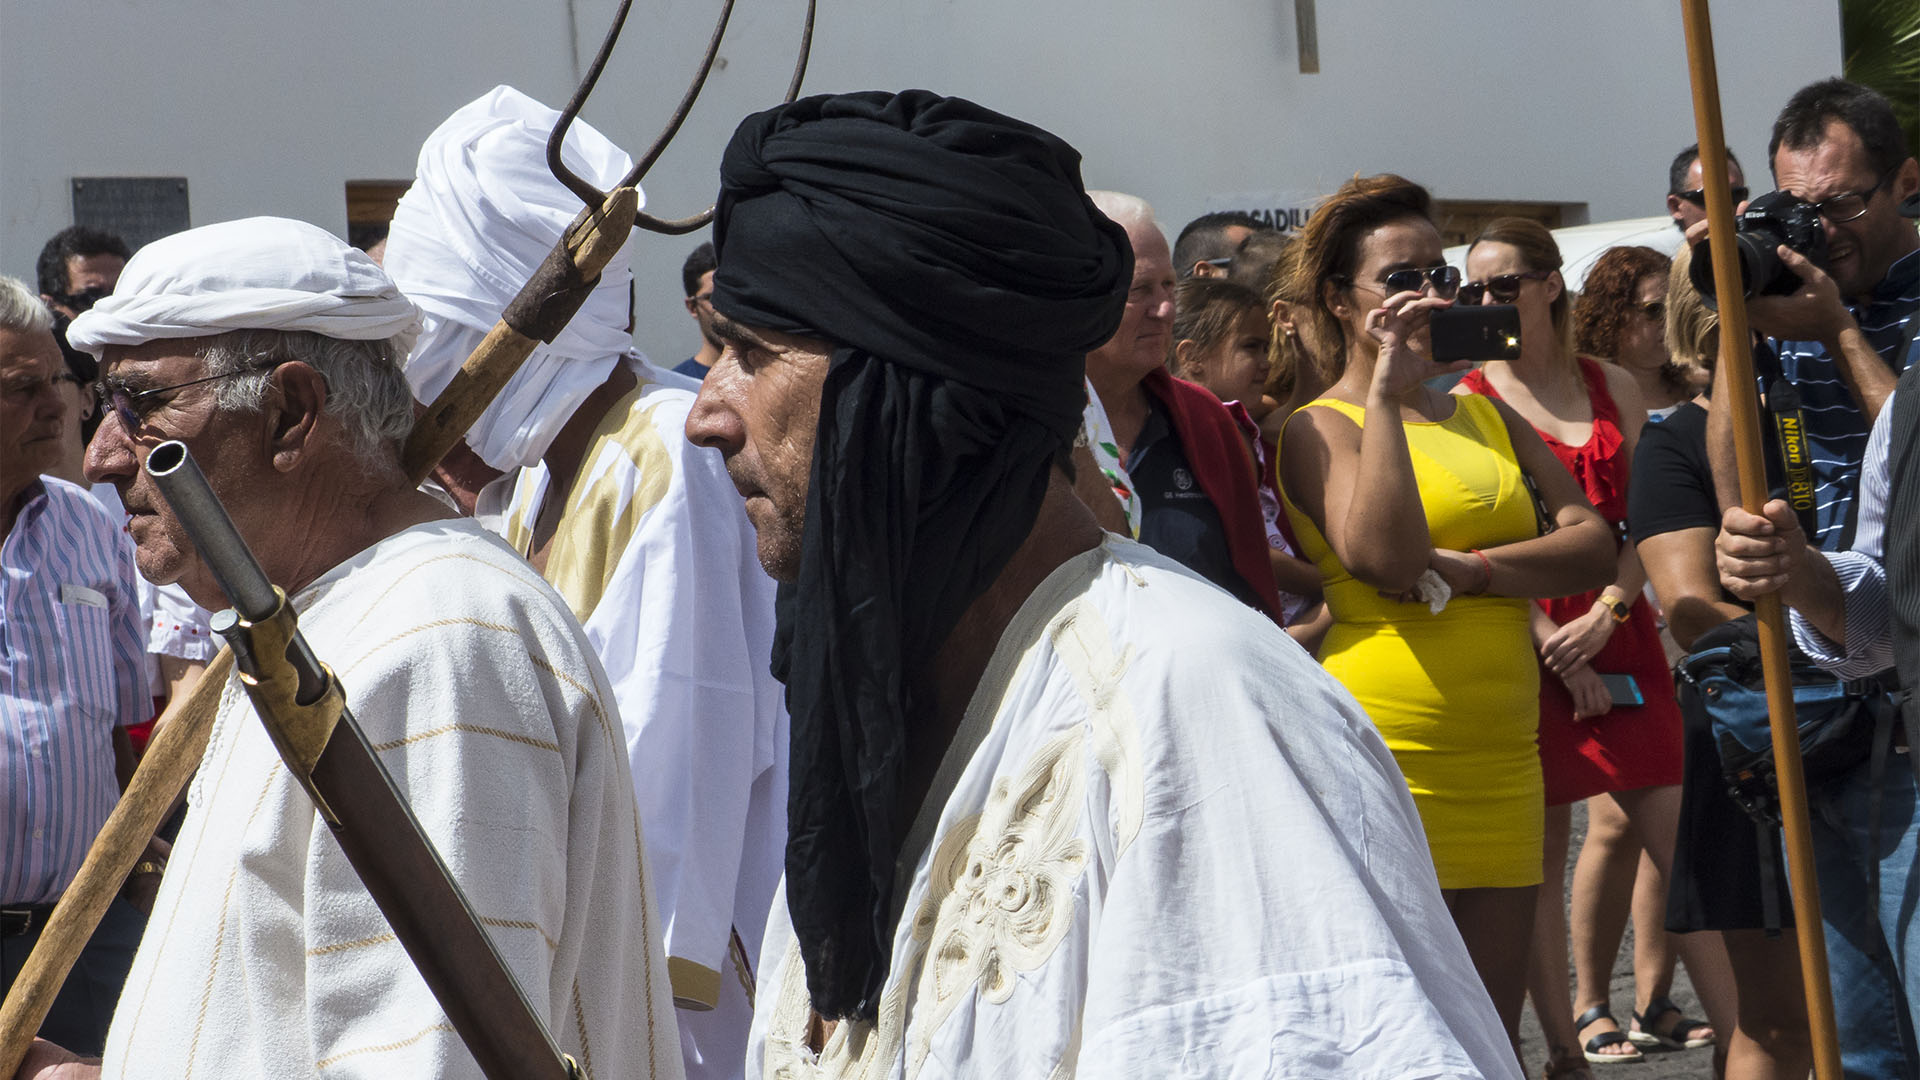 Sehenswürdigkeiten Fuerteventura – Tuineje Fiesta San Miguel – Batallas del Cuchillete y Tamasite.